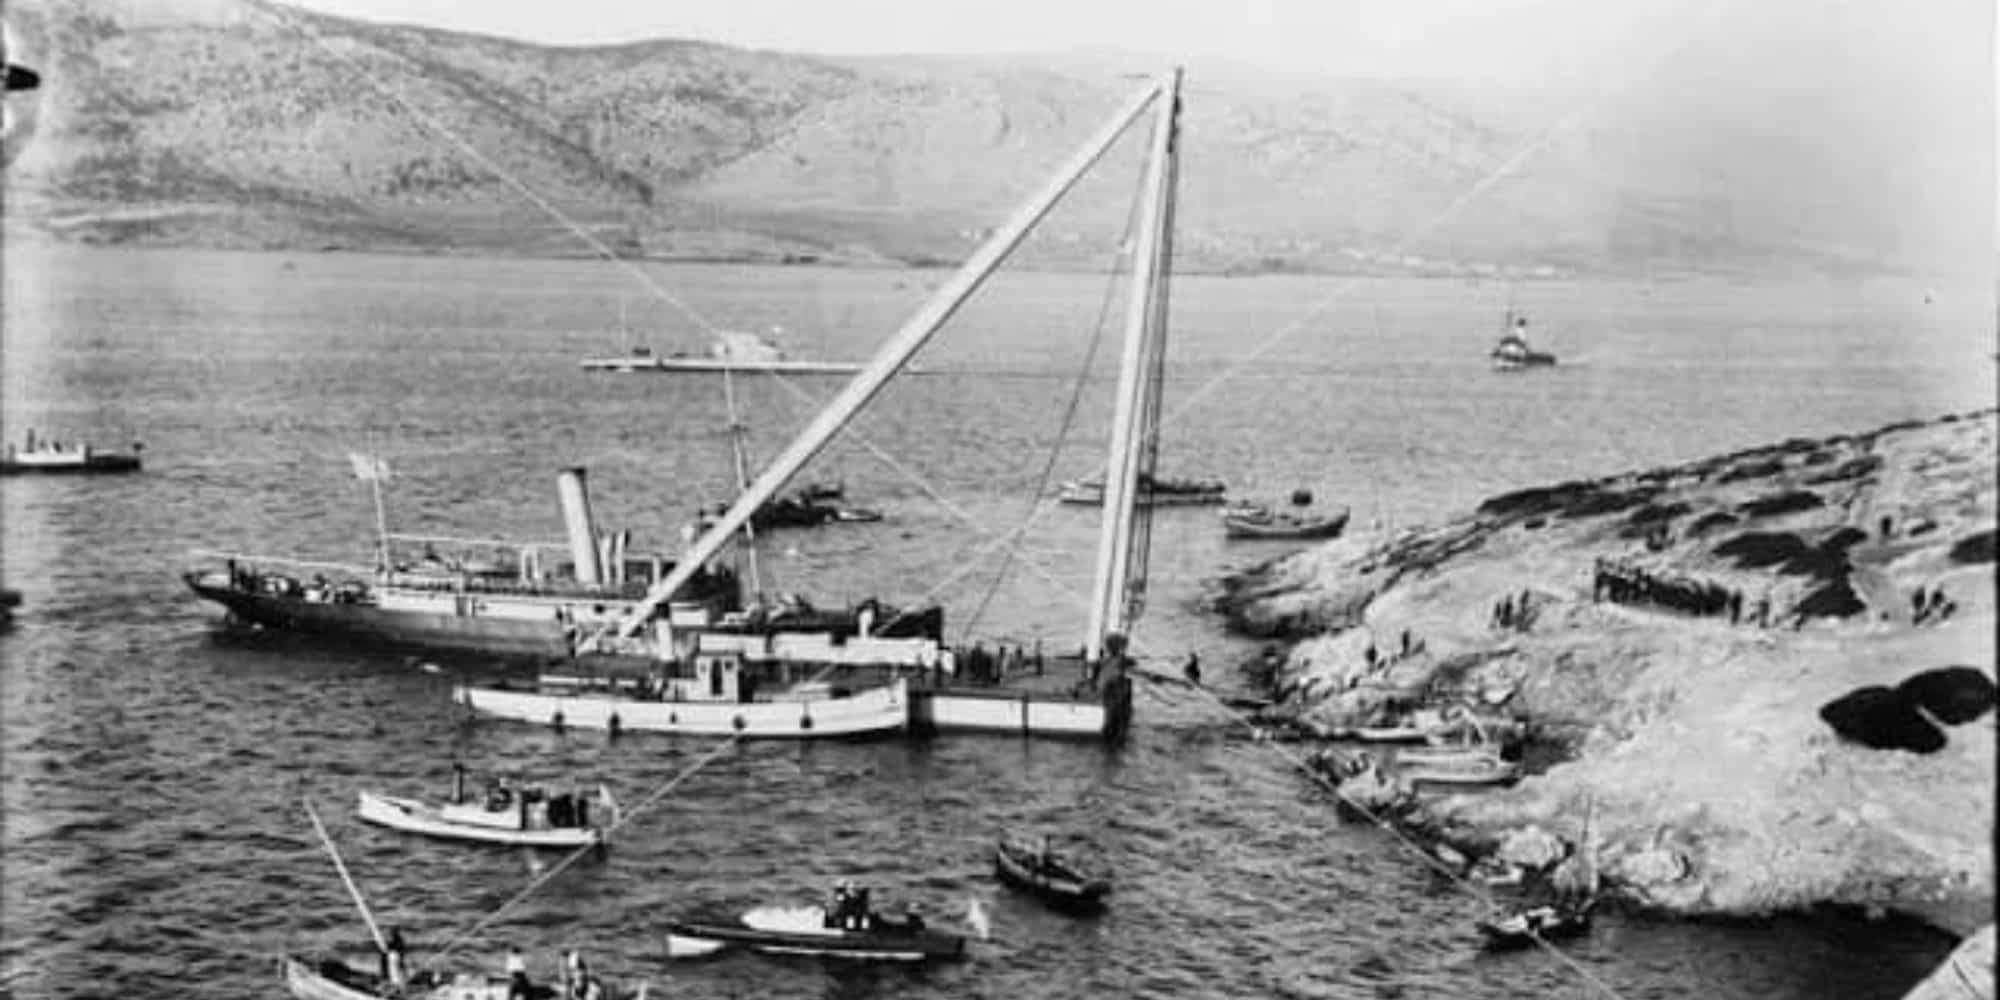 Navagio Alexandros 10 3 23 - Σαν σήμερα: 100 χρόνια από το ναυάγιο του «Αλέξανδρου Ζ» έξω από τον Πειραιά - Η μεγαλύτερη ναυτική τραγωδία στην Ελλάδα με 297 θύματα